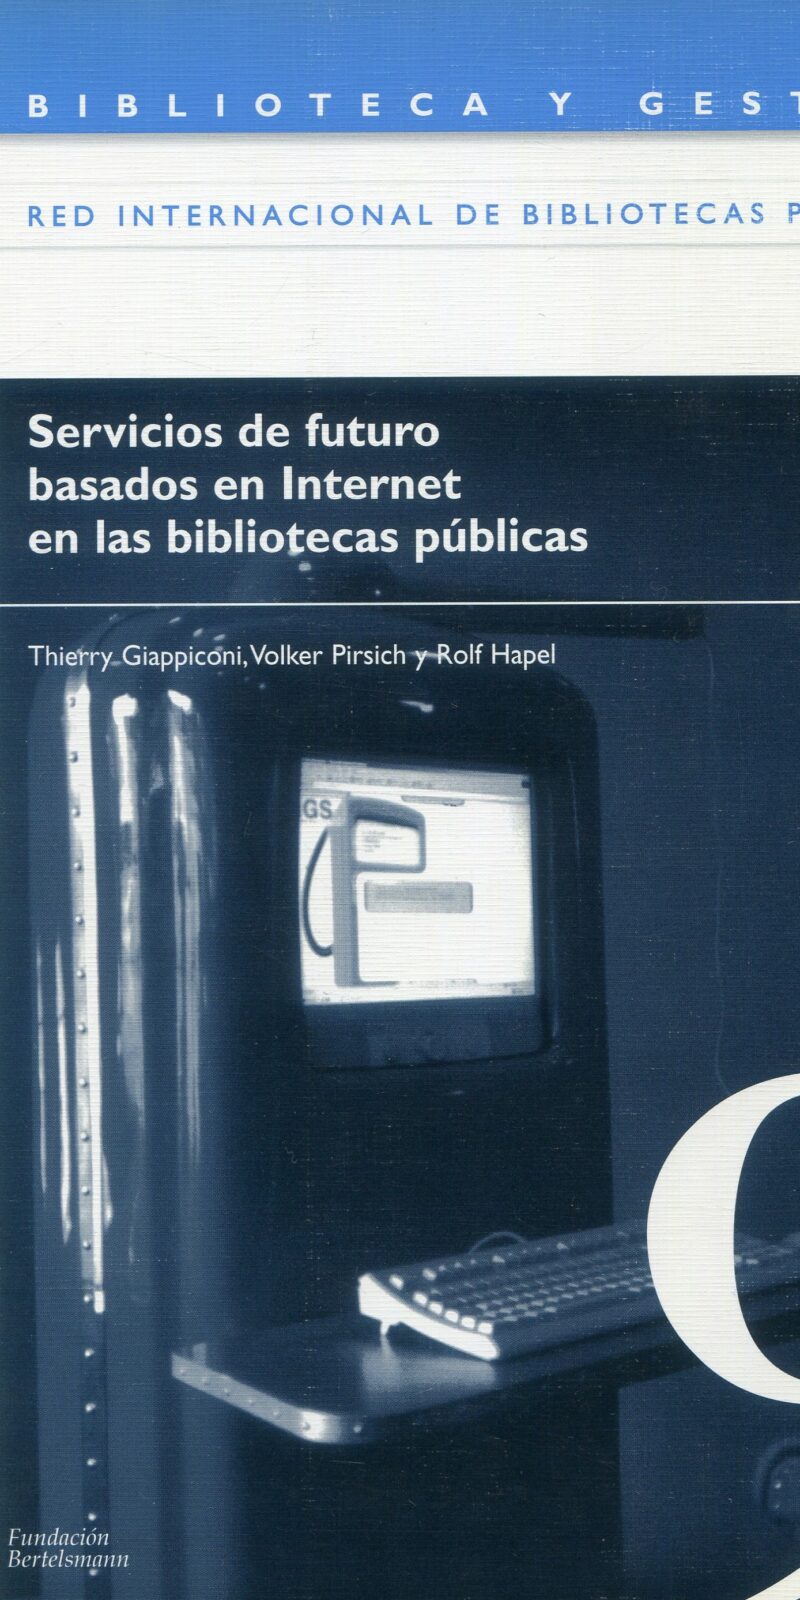 Servicios de futuro basados en Internet en bibliotecas públicas 9788493215521